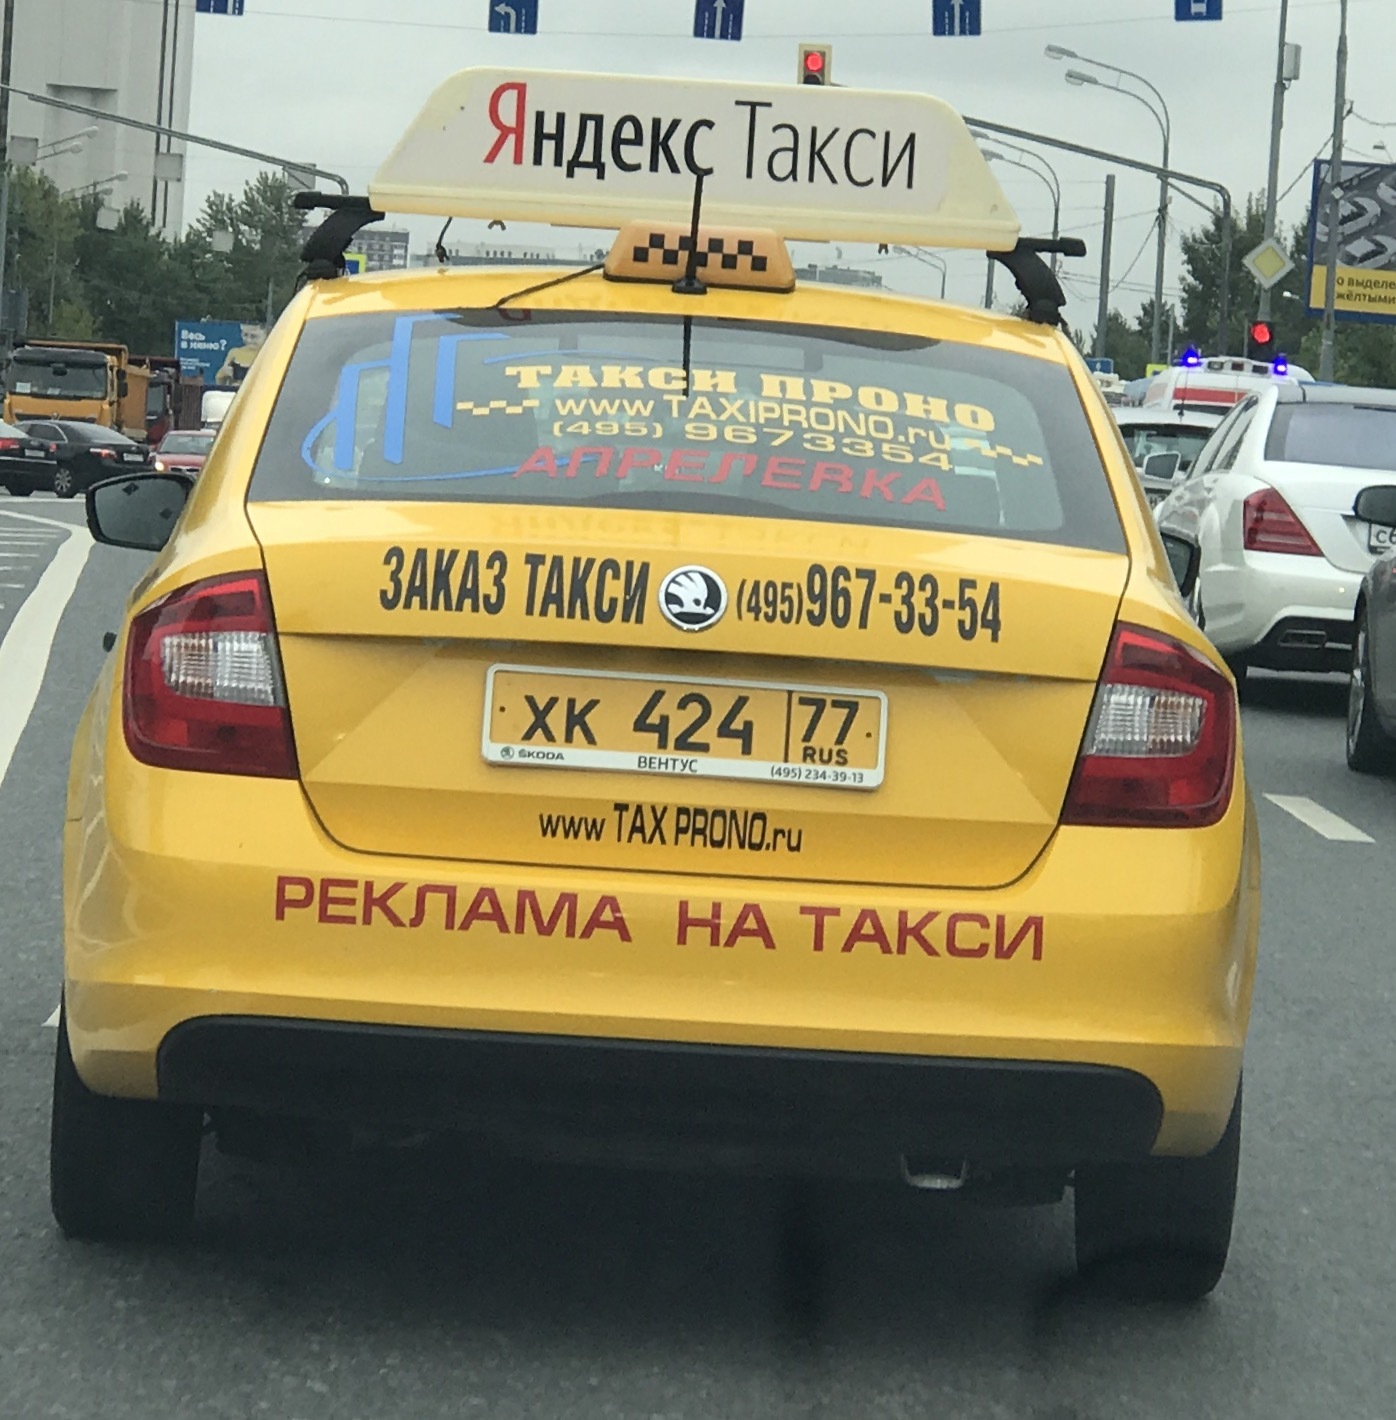 Нужны заказы на такси. Такси. Такси прикол. Надпись такси.